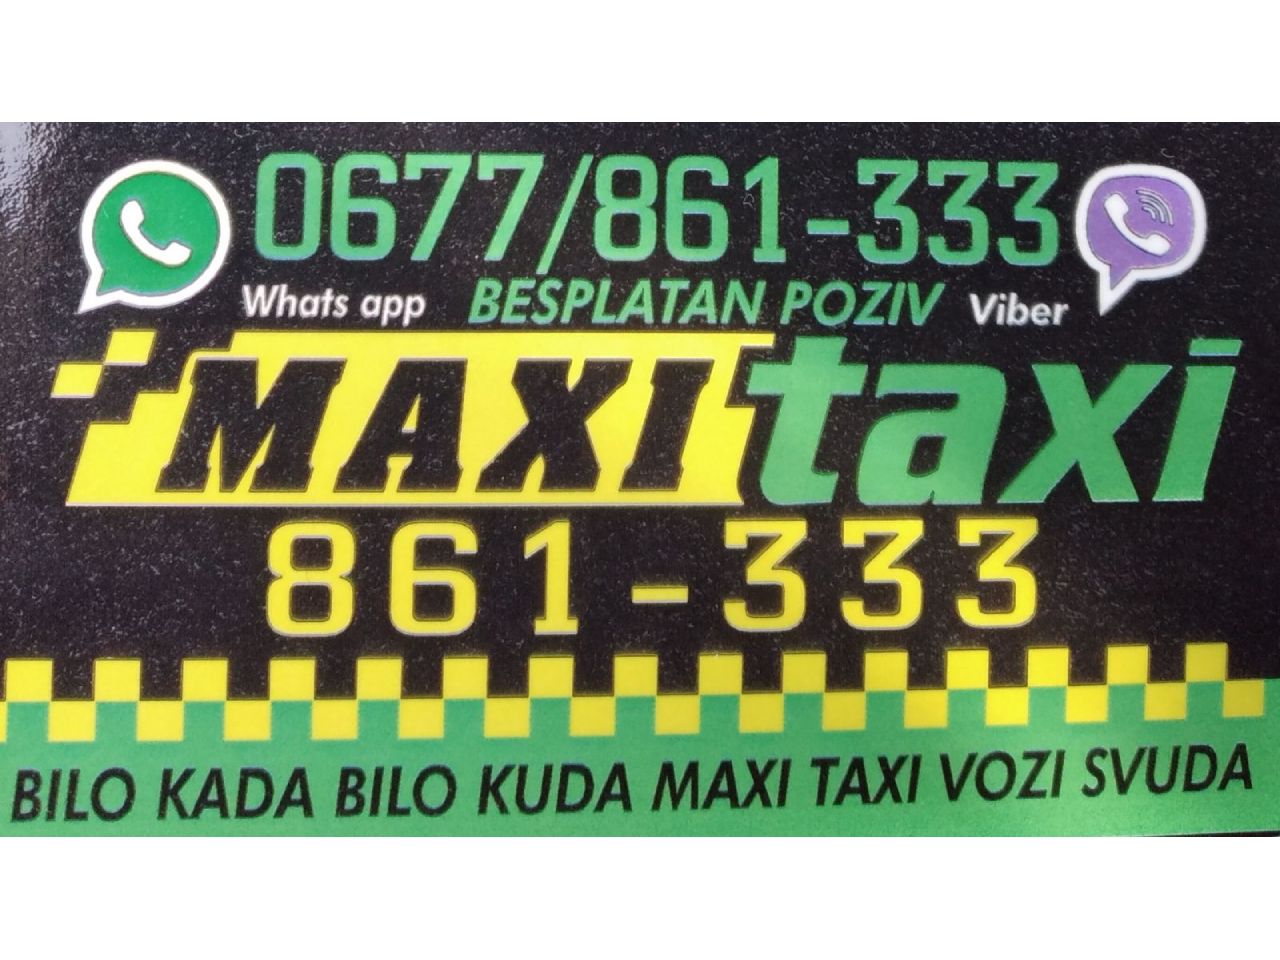 Photo 9 - OUR MAXI TAXI - TAXI services, Bajina Basta